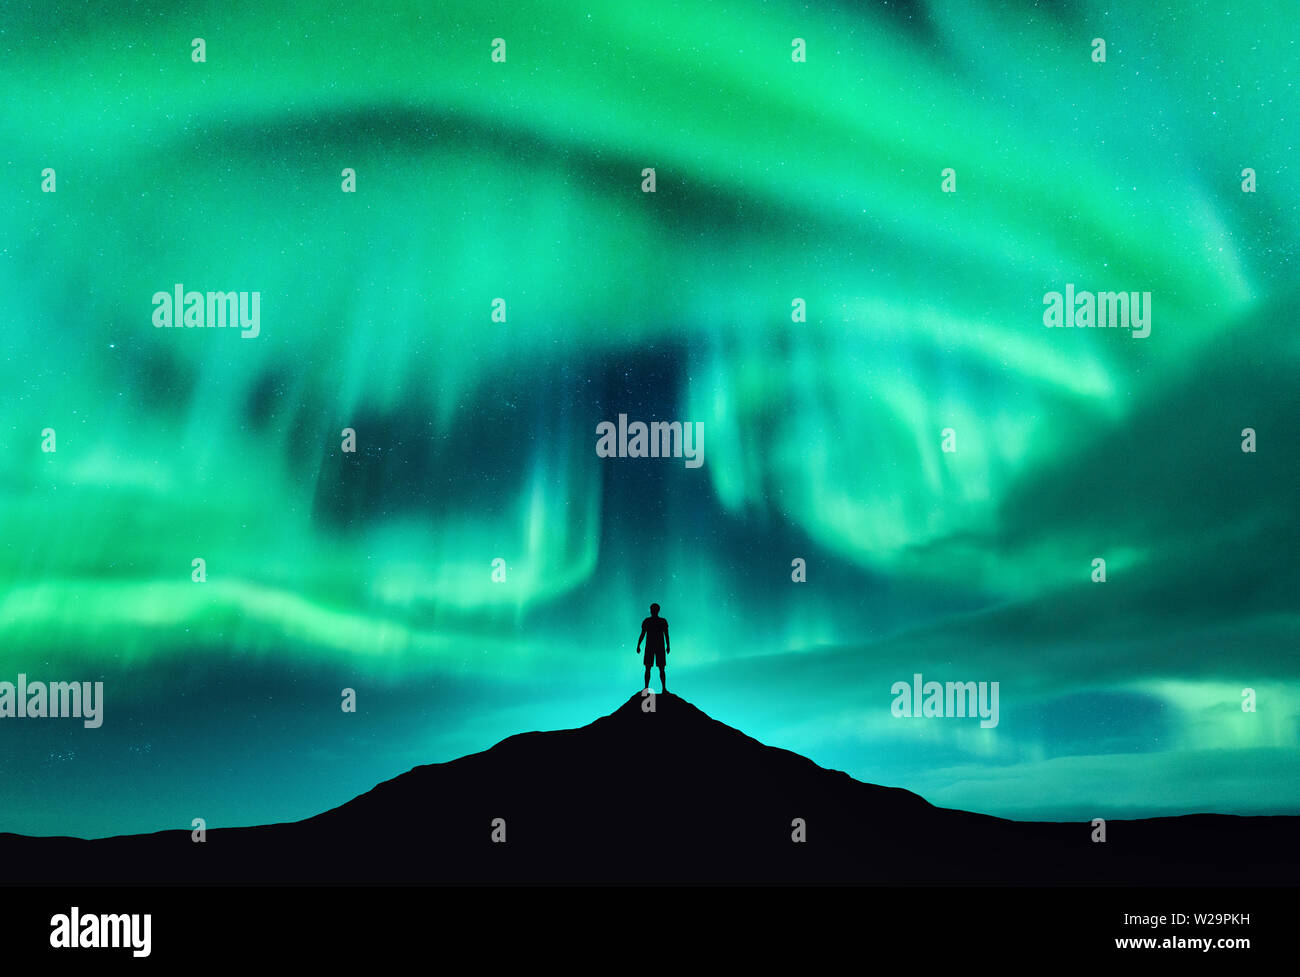 Aurora borealis and silhouette of a man on the mountain peak Stock Photo